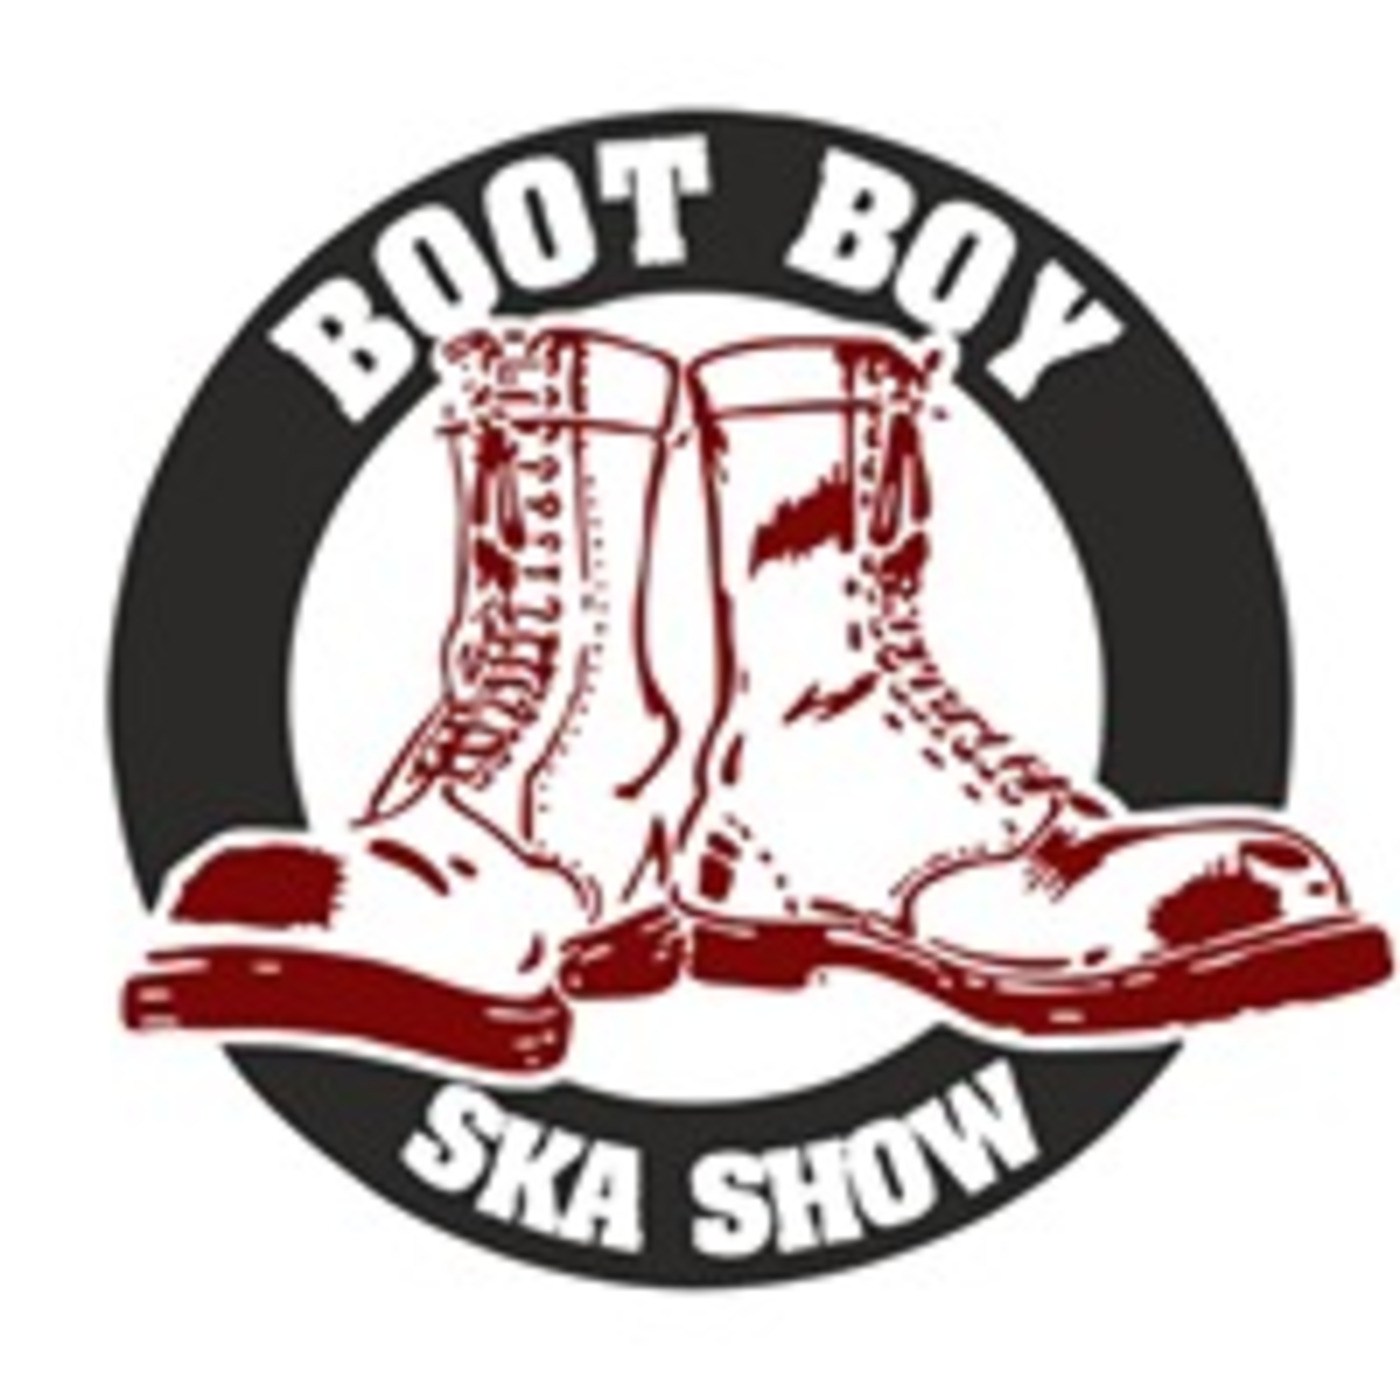 Episode 3277: The Boot Boy Ska Show With Geoff Longbar 3rd March 2023 On www.bootboyradio.net